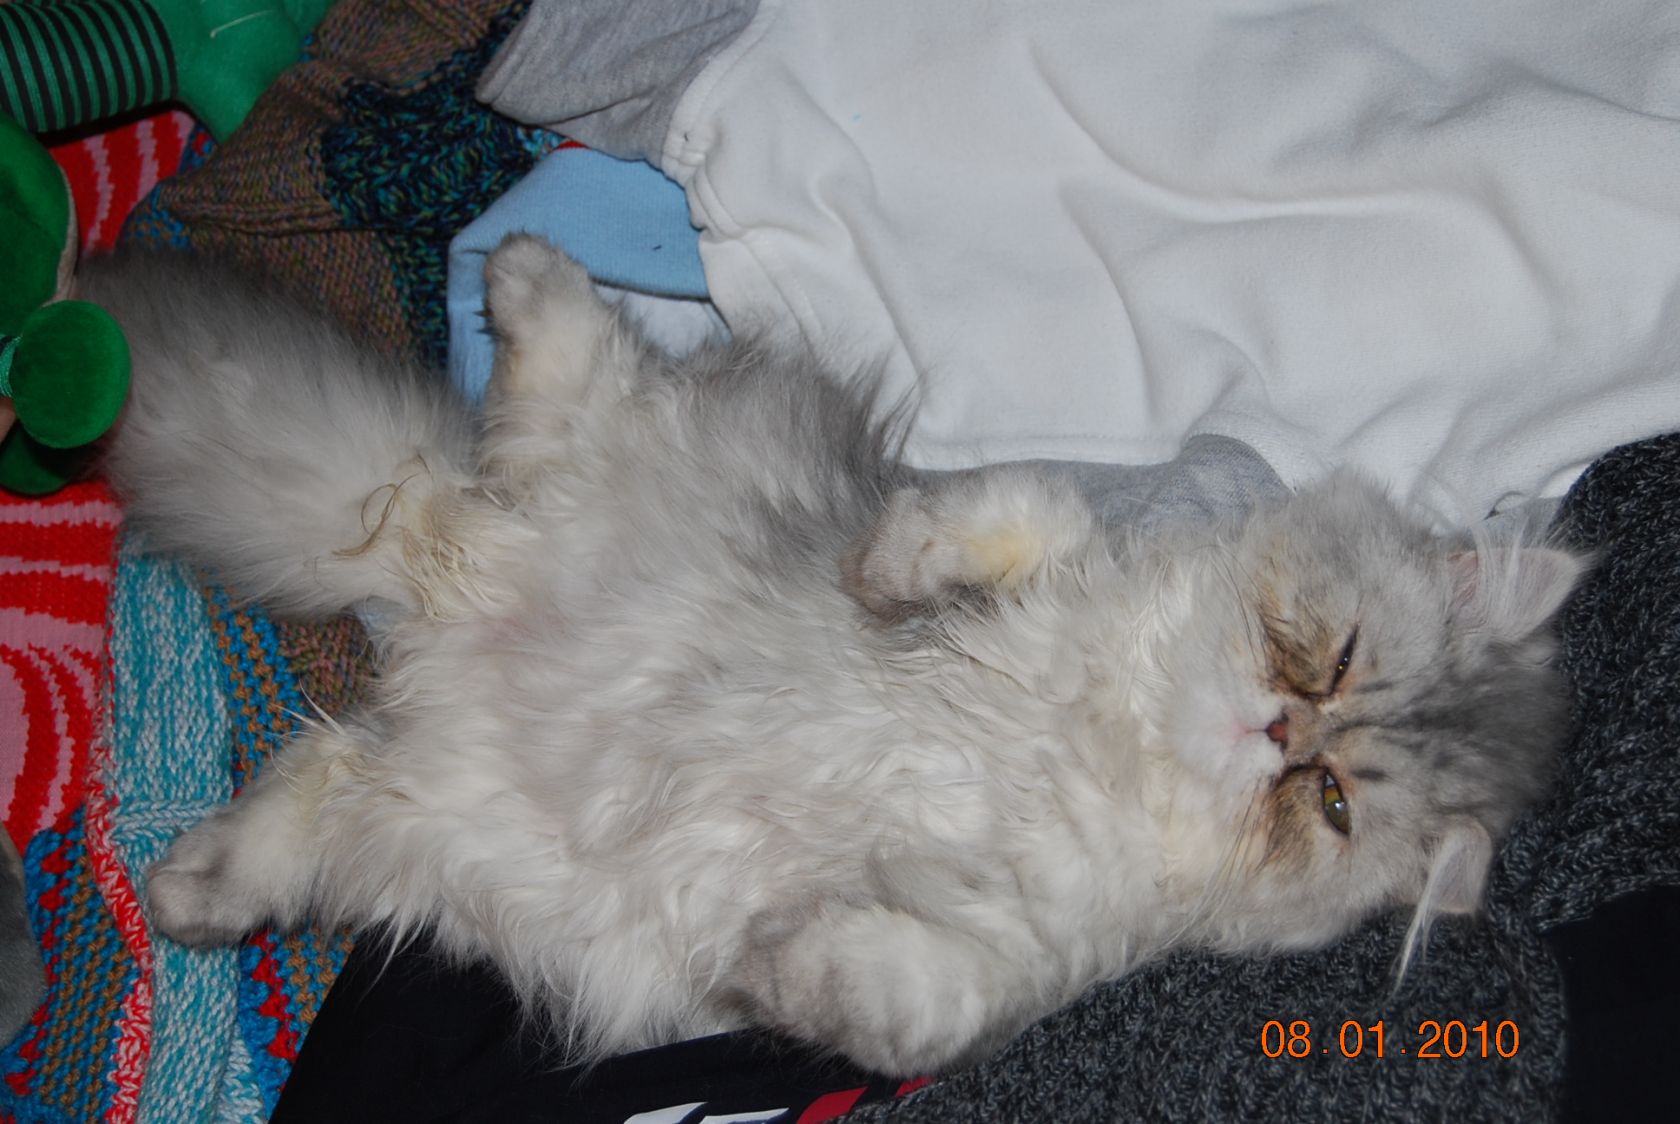 La nostra micina dorme spaparanzata!!!!
Lulù......un gatto persiano cinchillà !! Chissa' cosa stara' pensando spaparanzata cosi...è un amore !!!anchese un po' discola ma è molto bella 
